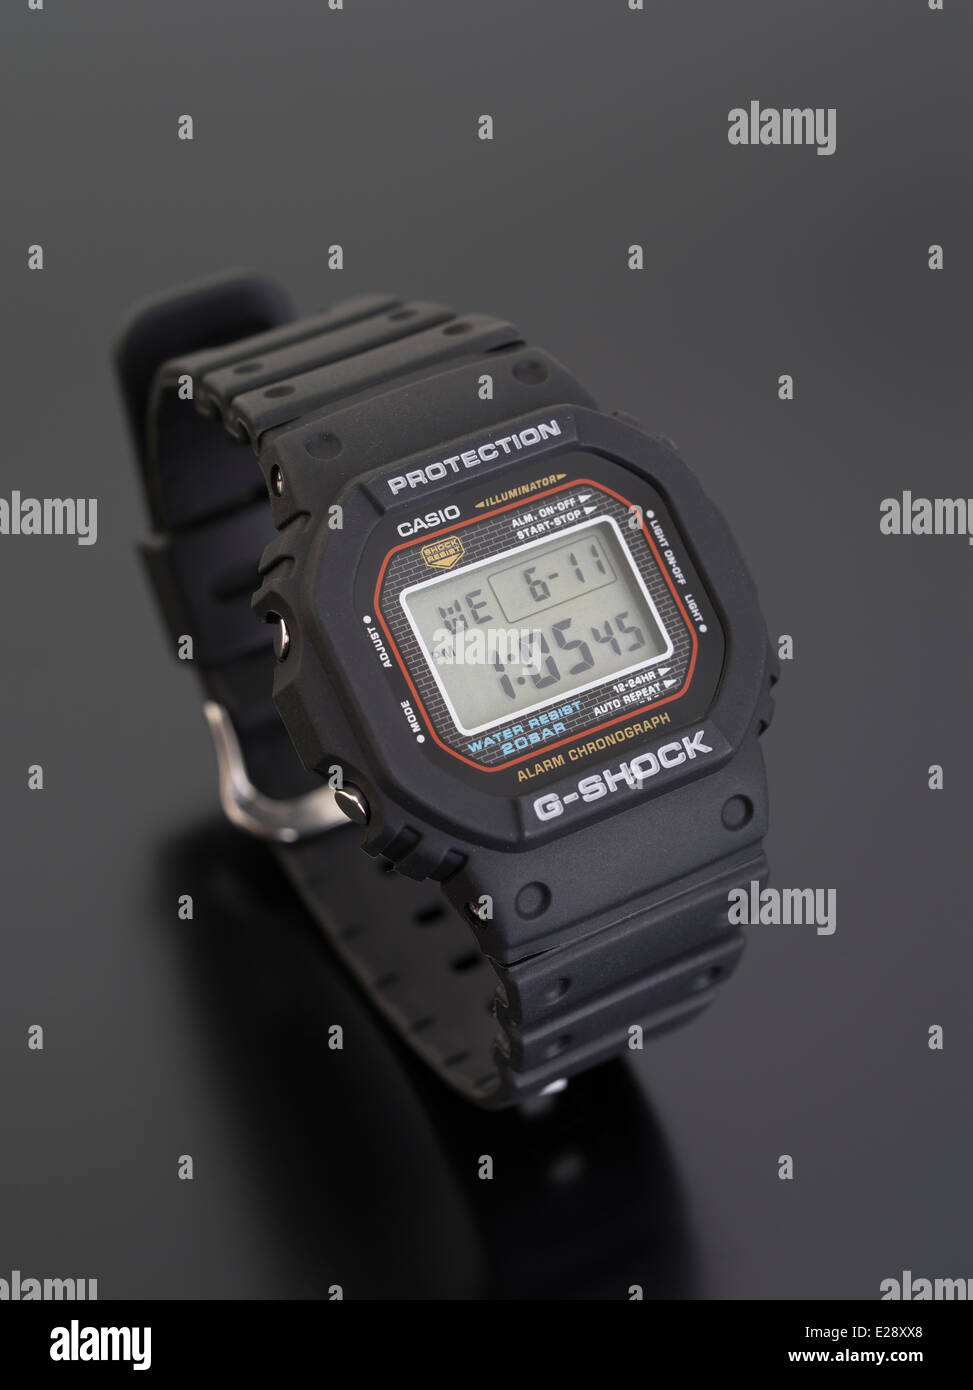 CASIO G-SHOCK DW-5000C digital watch publié la première fois en 1983 Banque D'Images